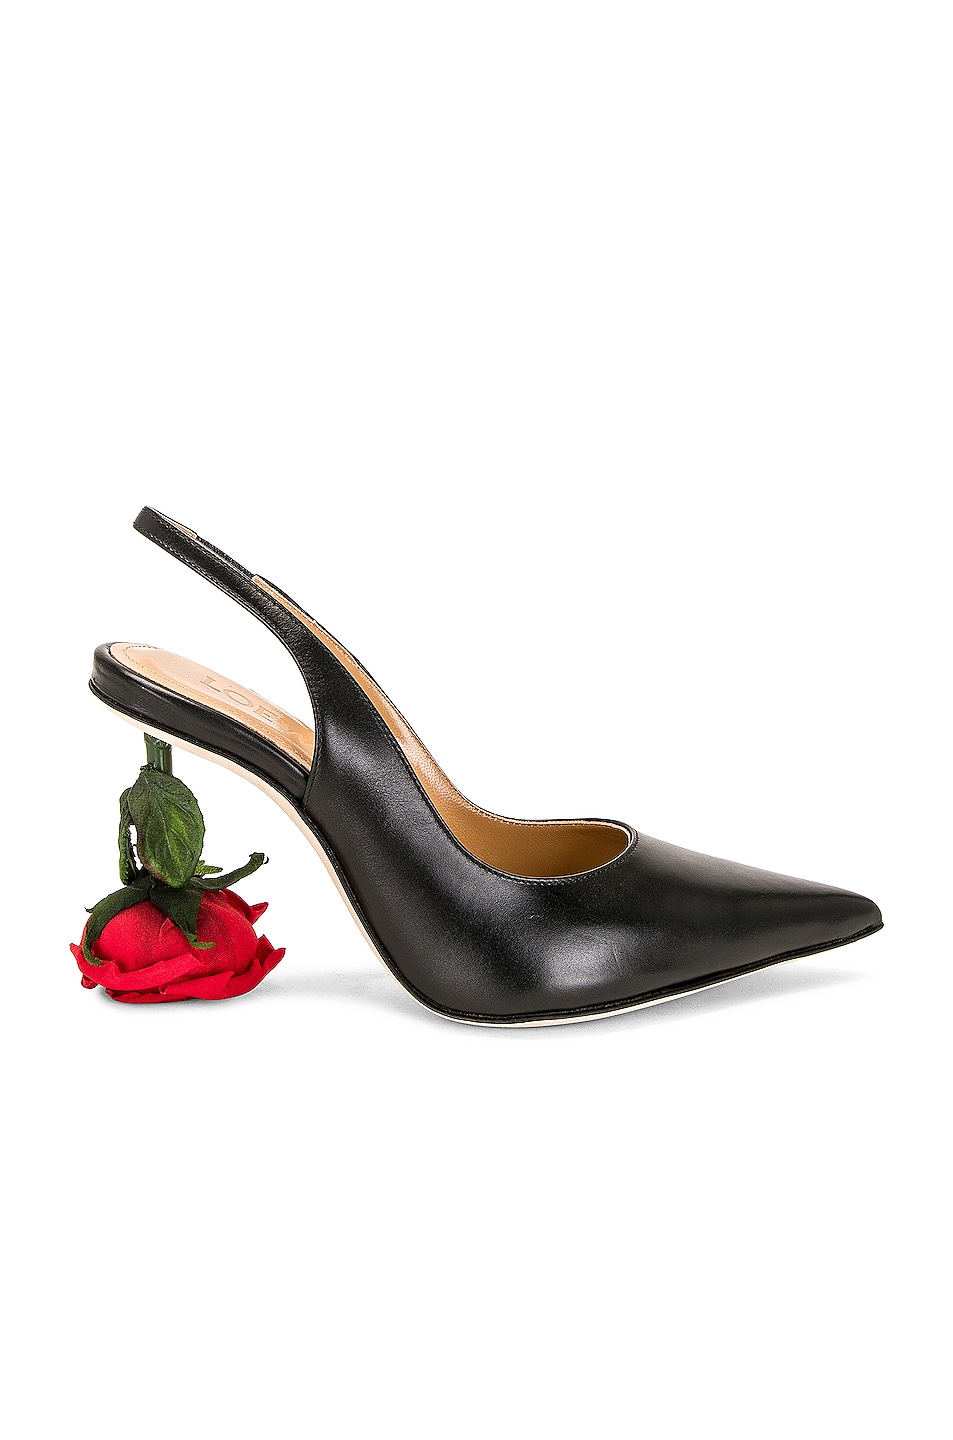 Loewe Rose 100 Sling Back Heel in Black | FWRD